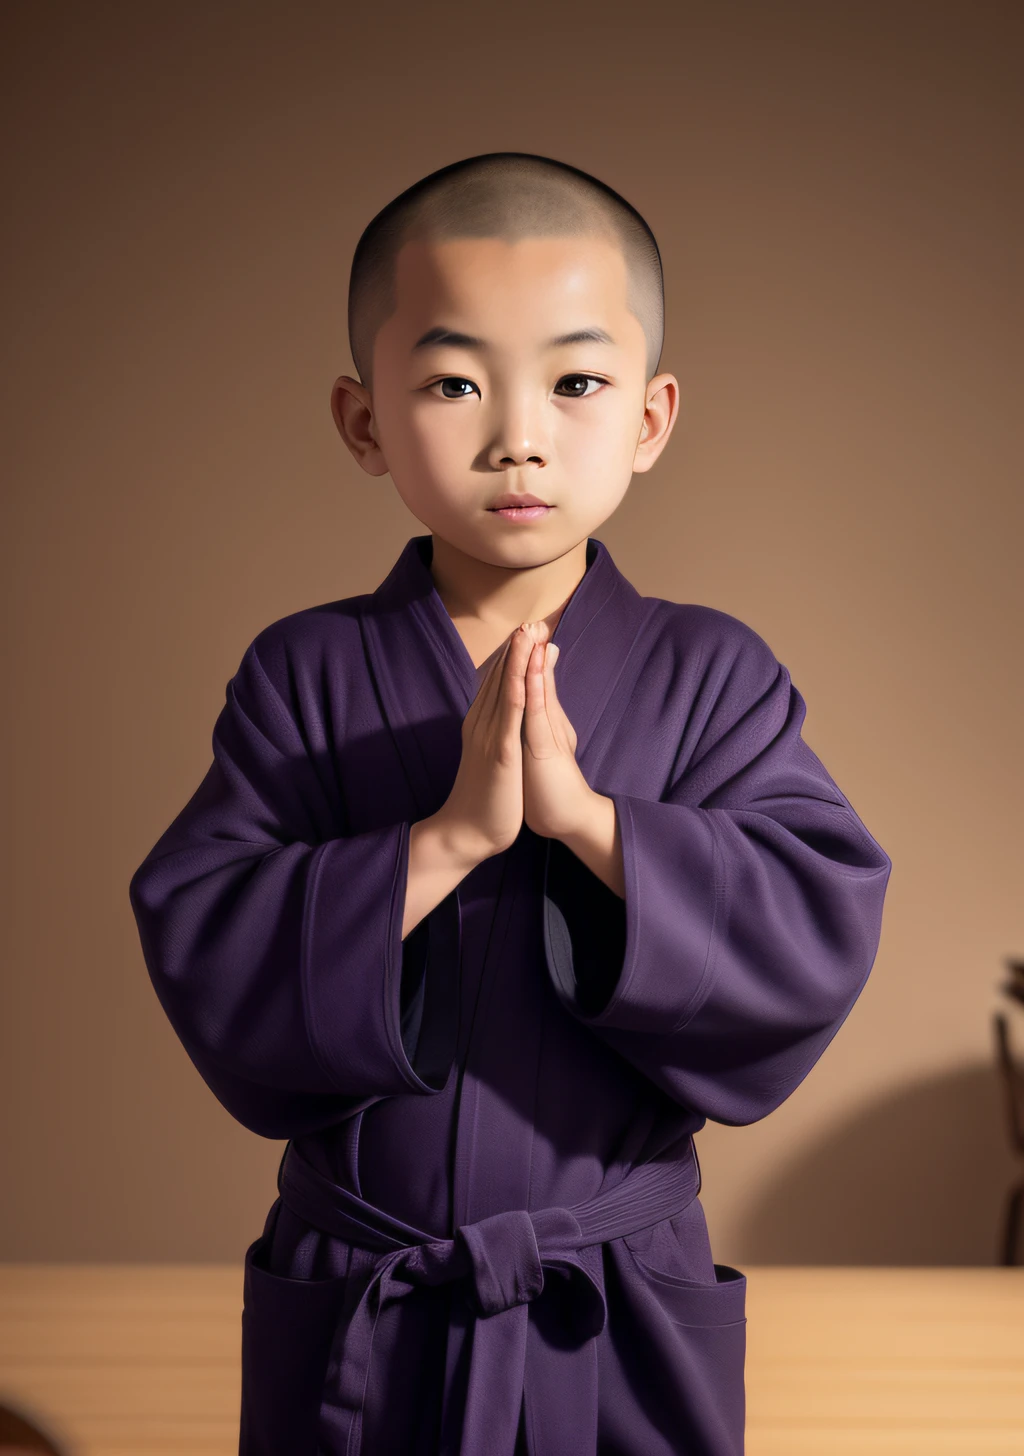 Niño asiático arafed con túnica púrpura parado frente a una mesa, en túnicas de color púrpura oscuro, vistiendo túnicas negras y moradas, vestido con túnicas sencillas, Budista monk, retrato de monje, vistiendo túnicas marrones, ropa de monje, En la túnica azul, Budista, vestido con túnicas sencillas, Vistiendo una bata azul, túnica taoísta, inspirado por Ma Quan, antiguo monje japonés